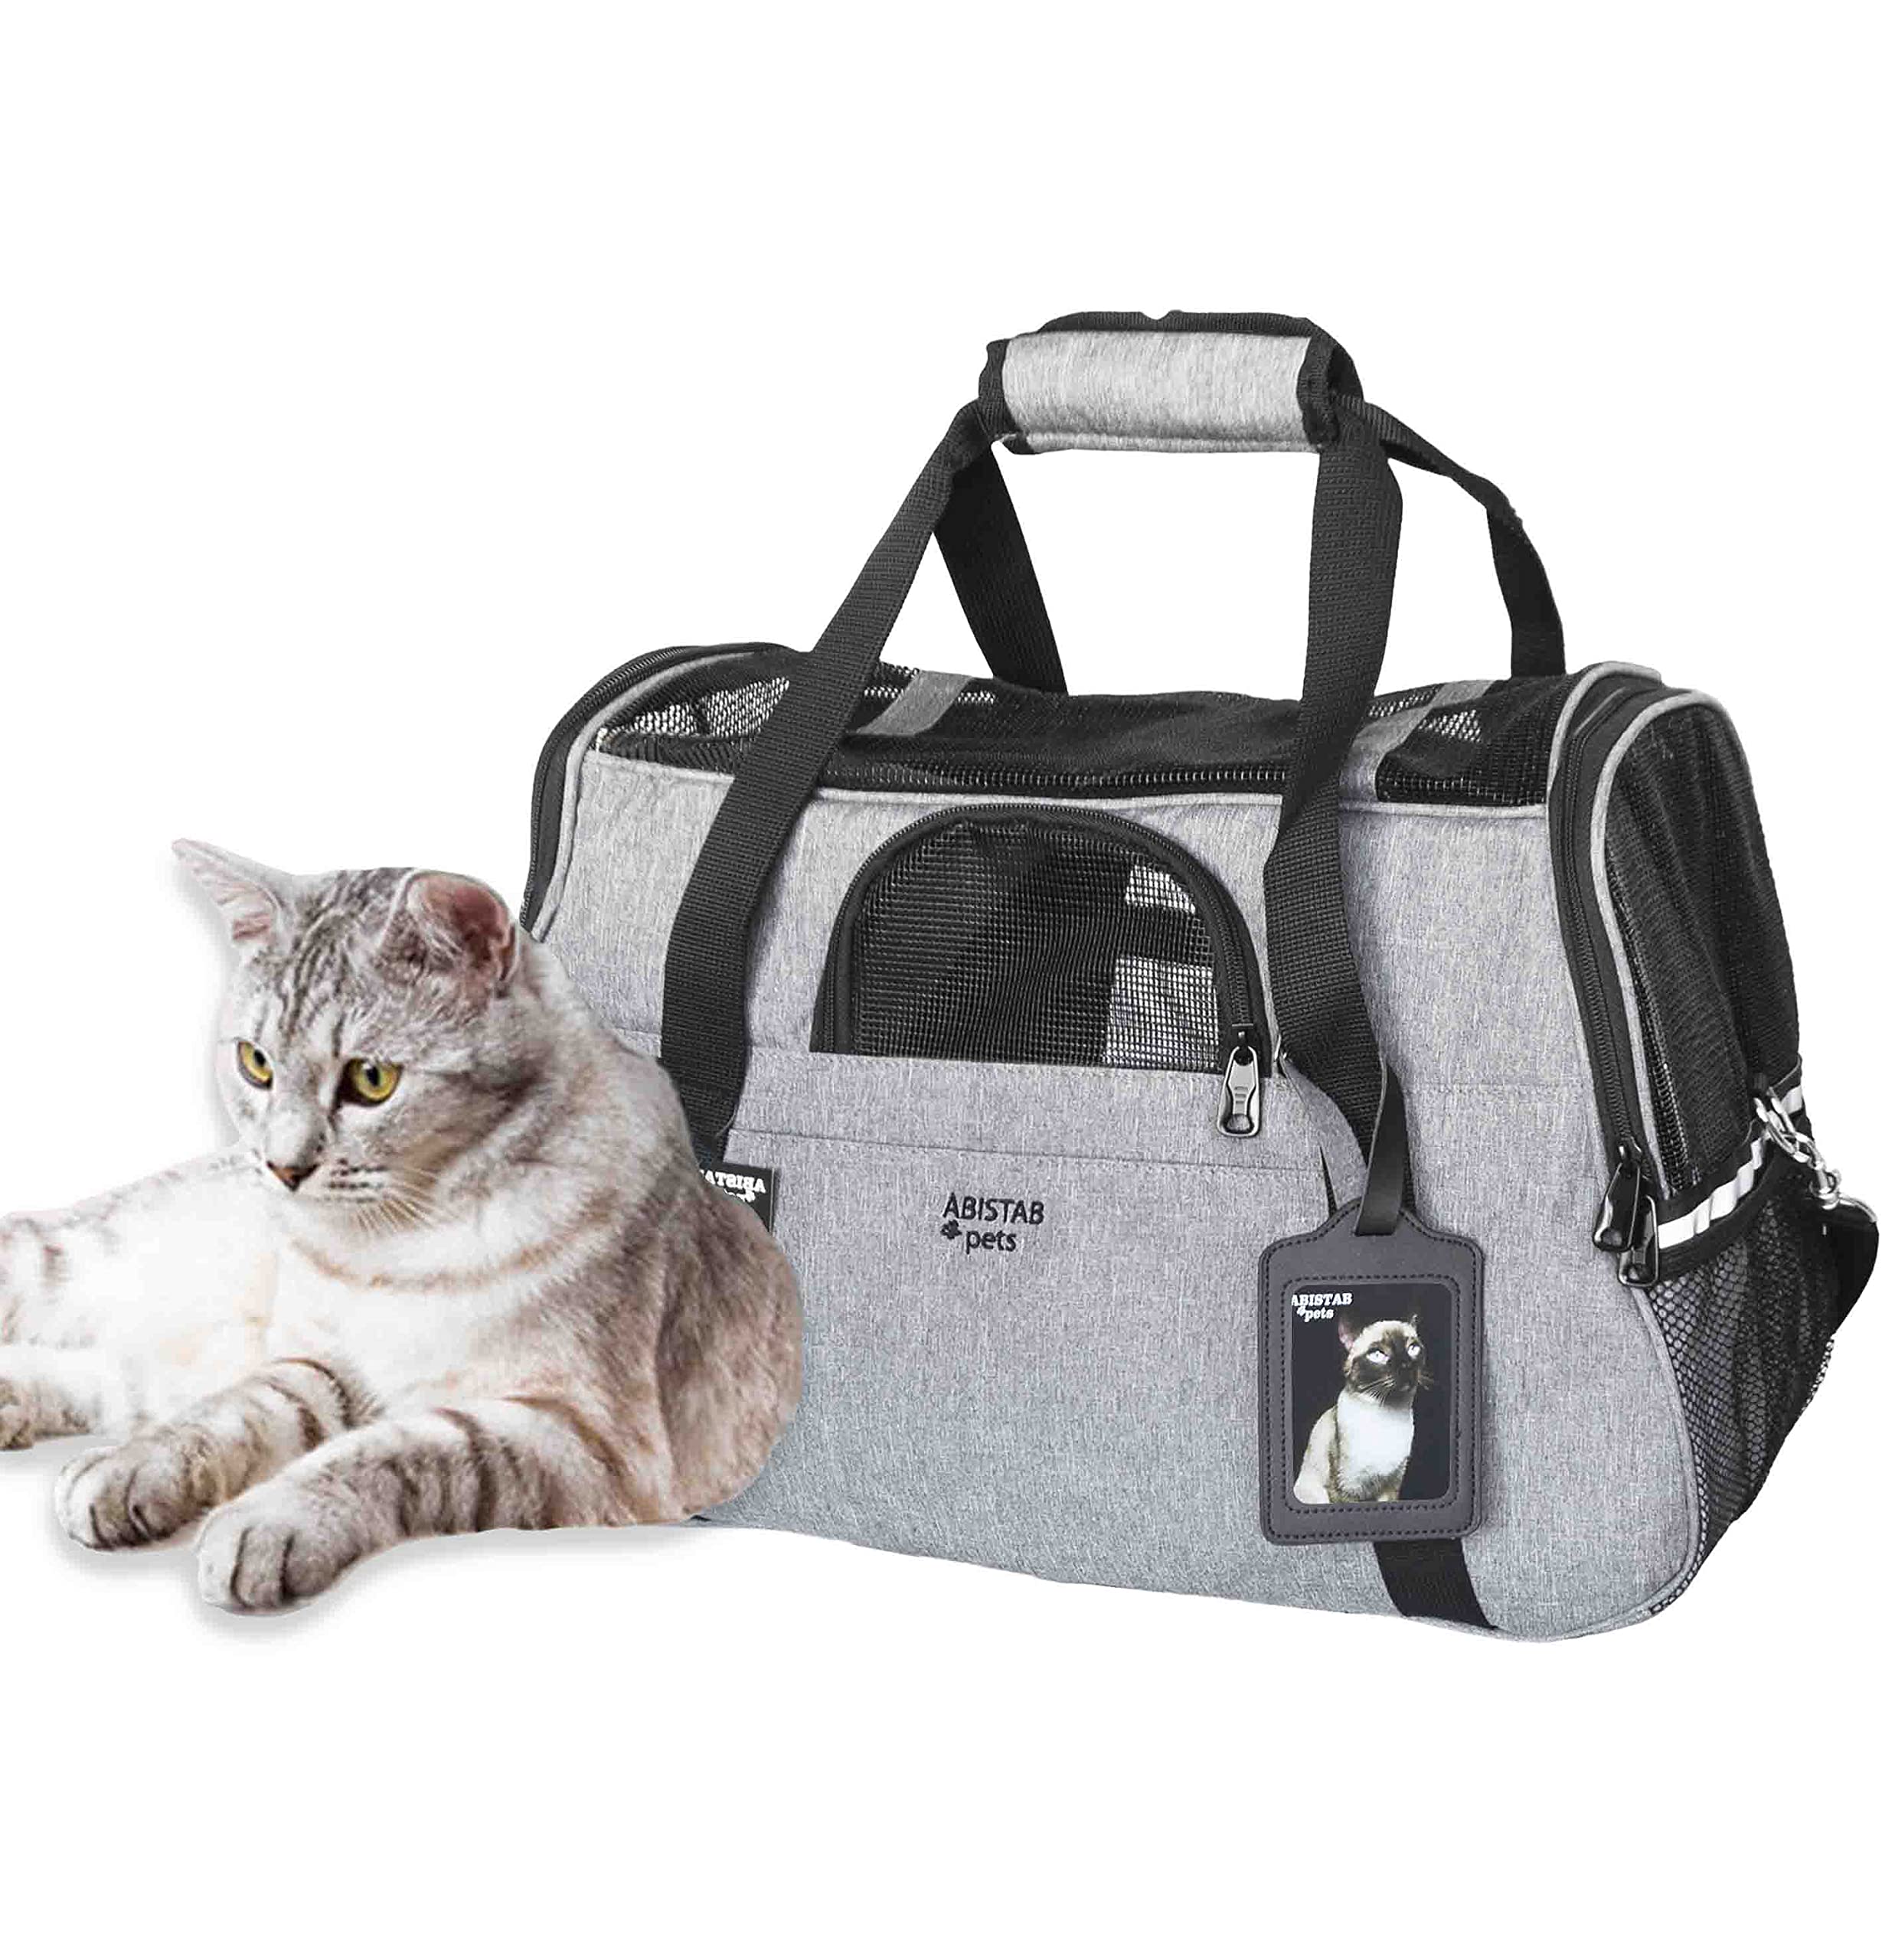 ABISTAB Hundebox faltbar Transportbox Hunde und Katze Transporttasche für Auto- und Flugreisen mit ID-Tag und zusätzlichen Tragegurten, 48 x 33 x 25,5cm